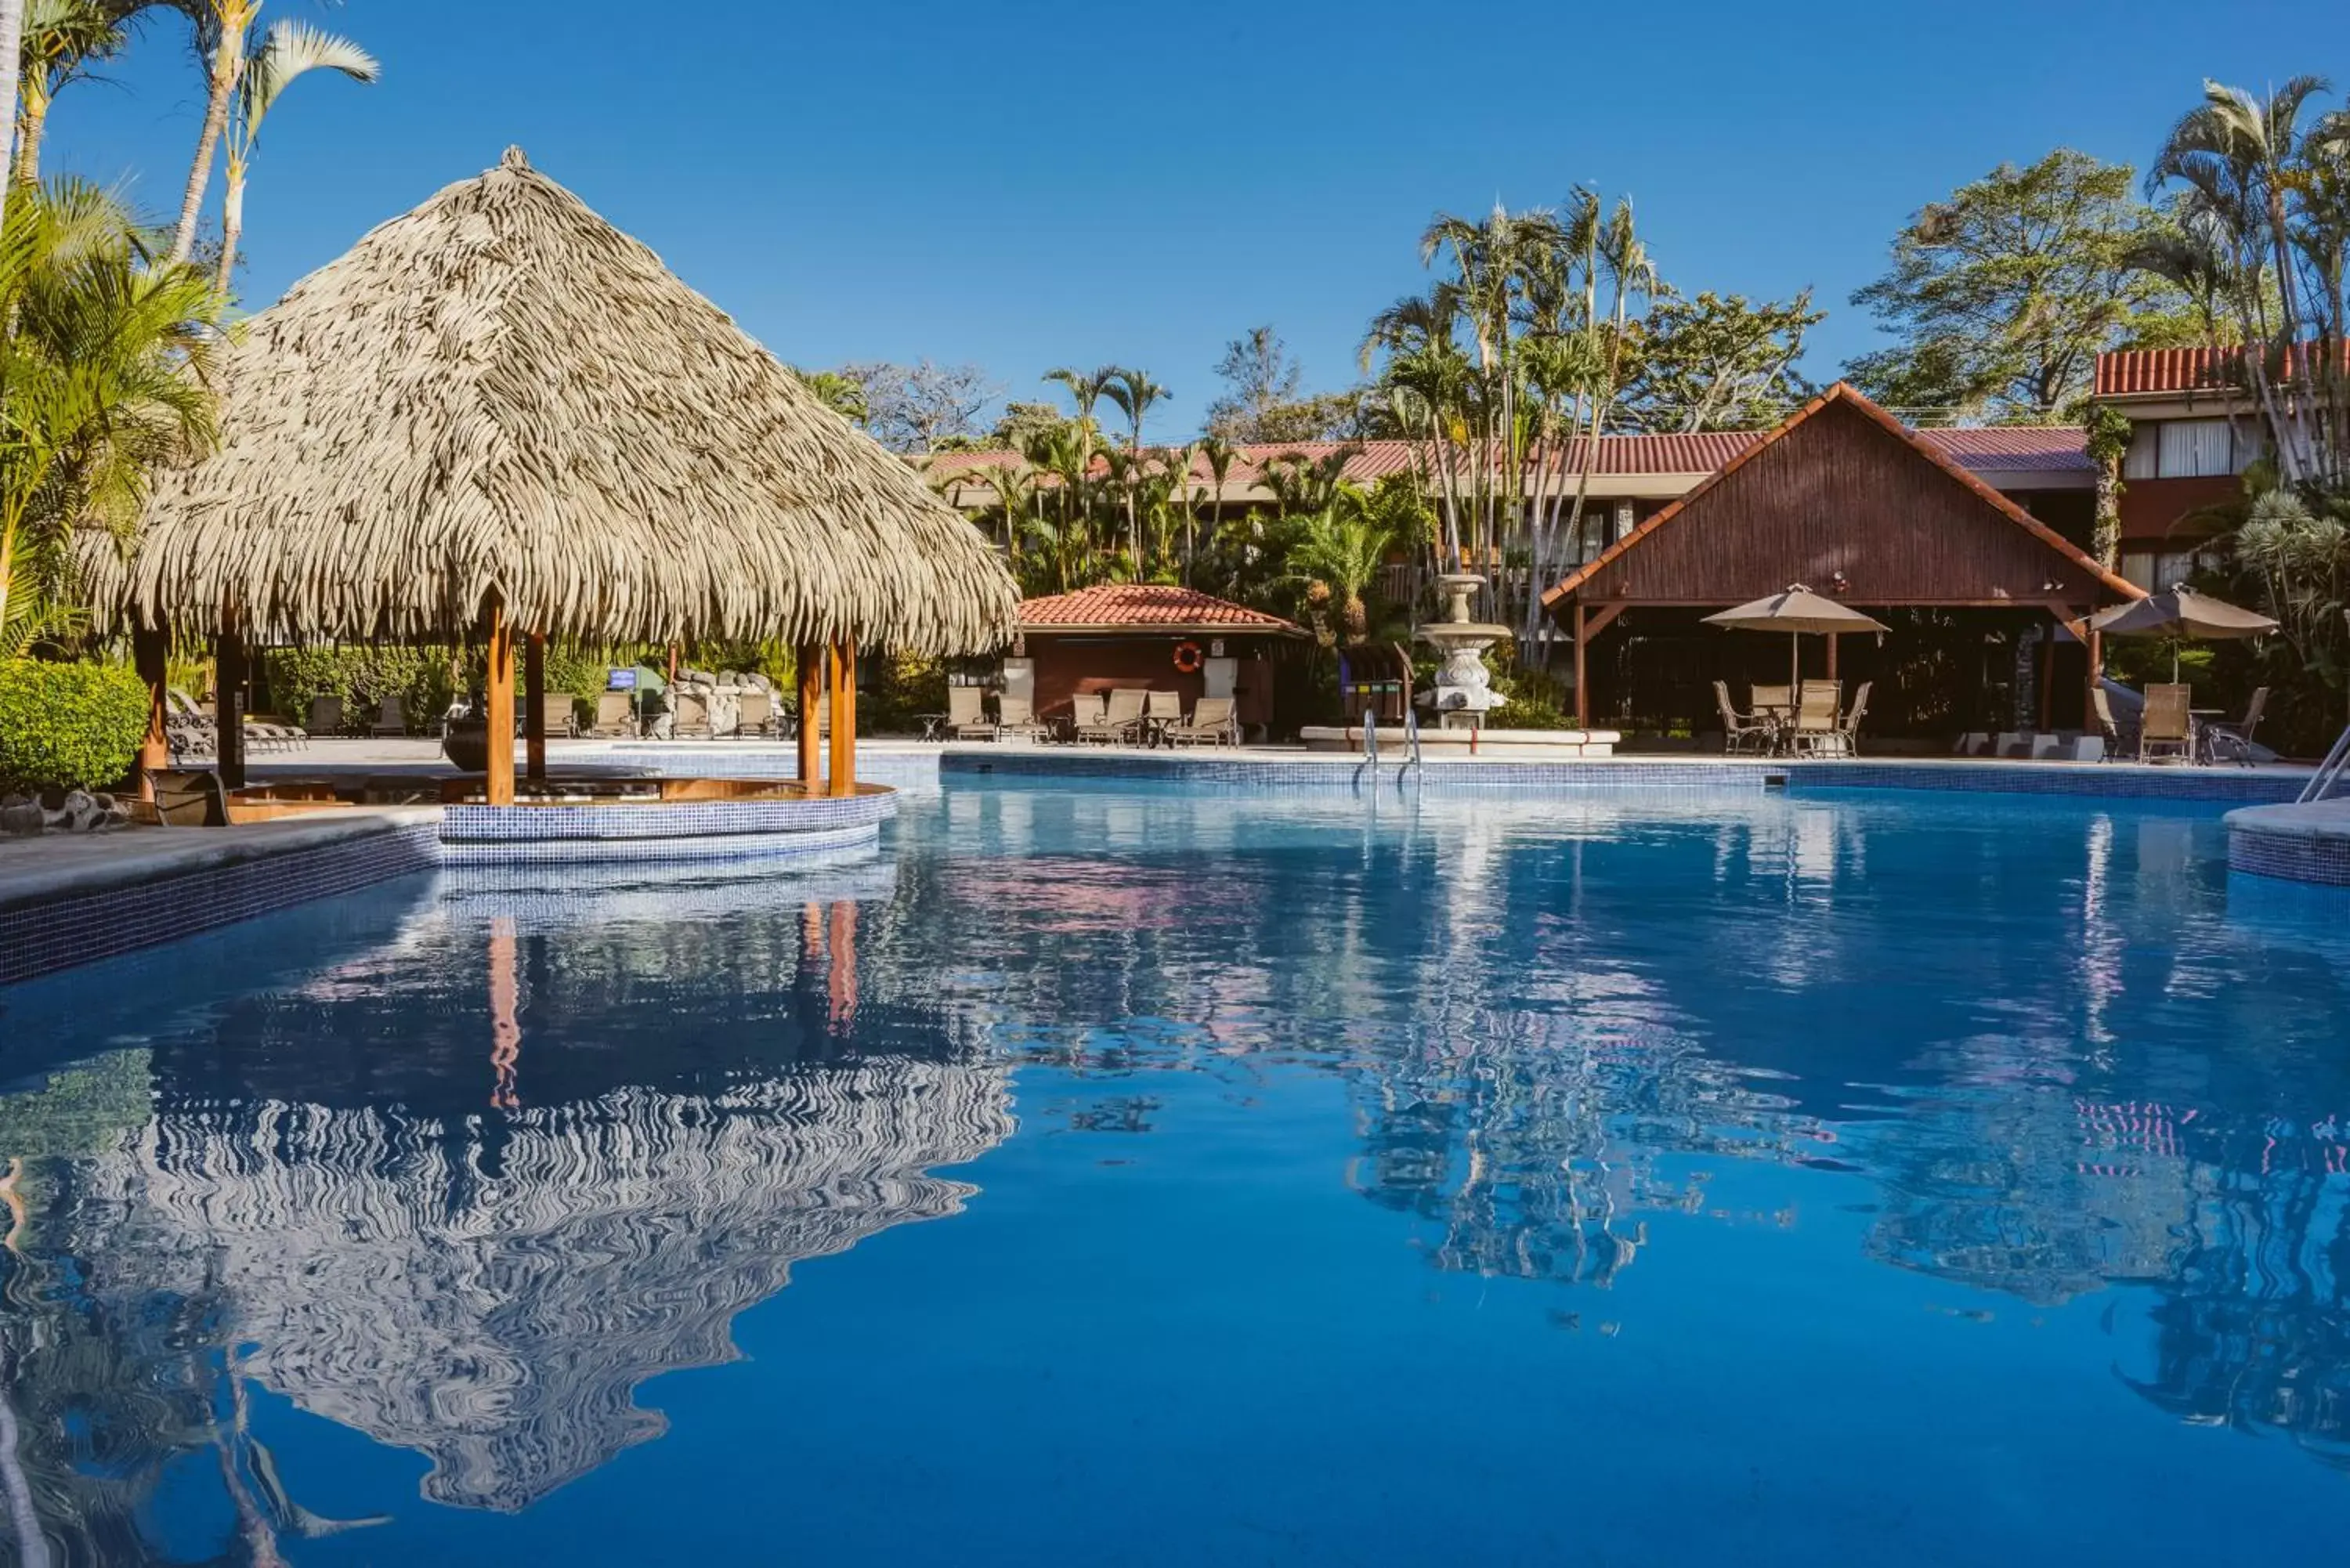 Swimming pool in Hilton Cariari DoubleTree San Jose - Costa Rica